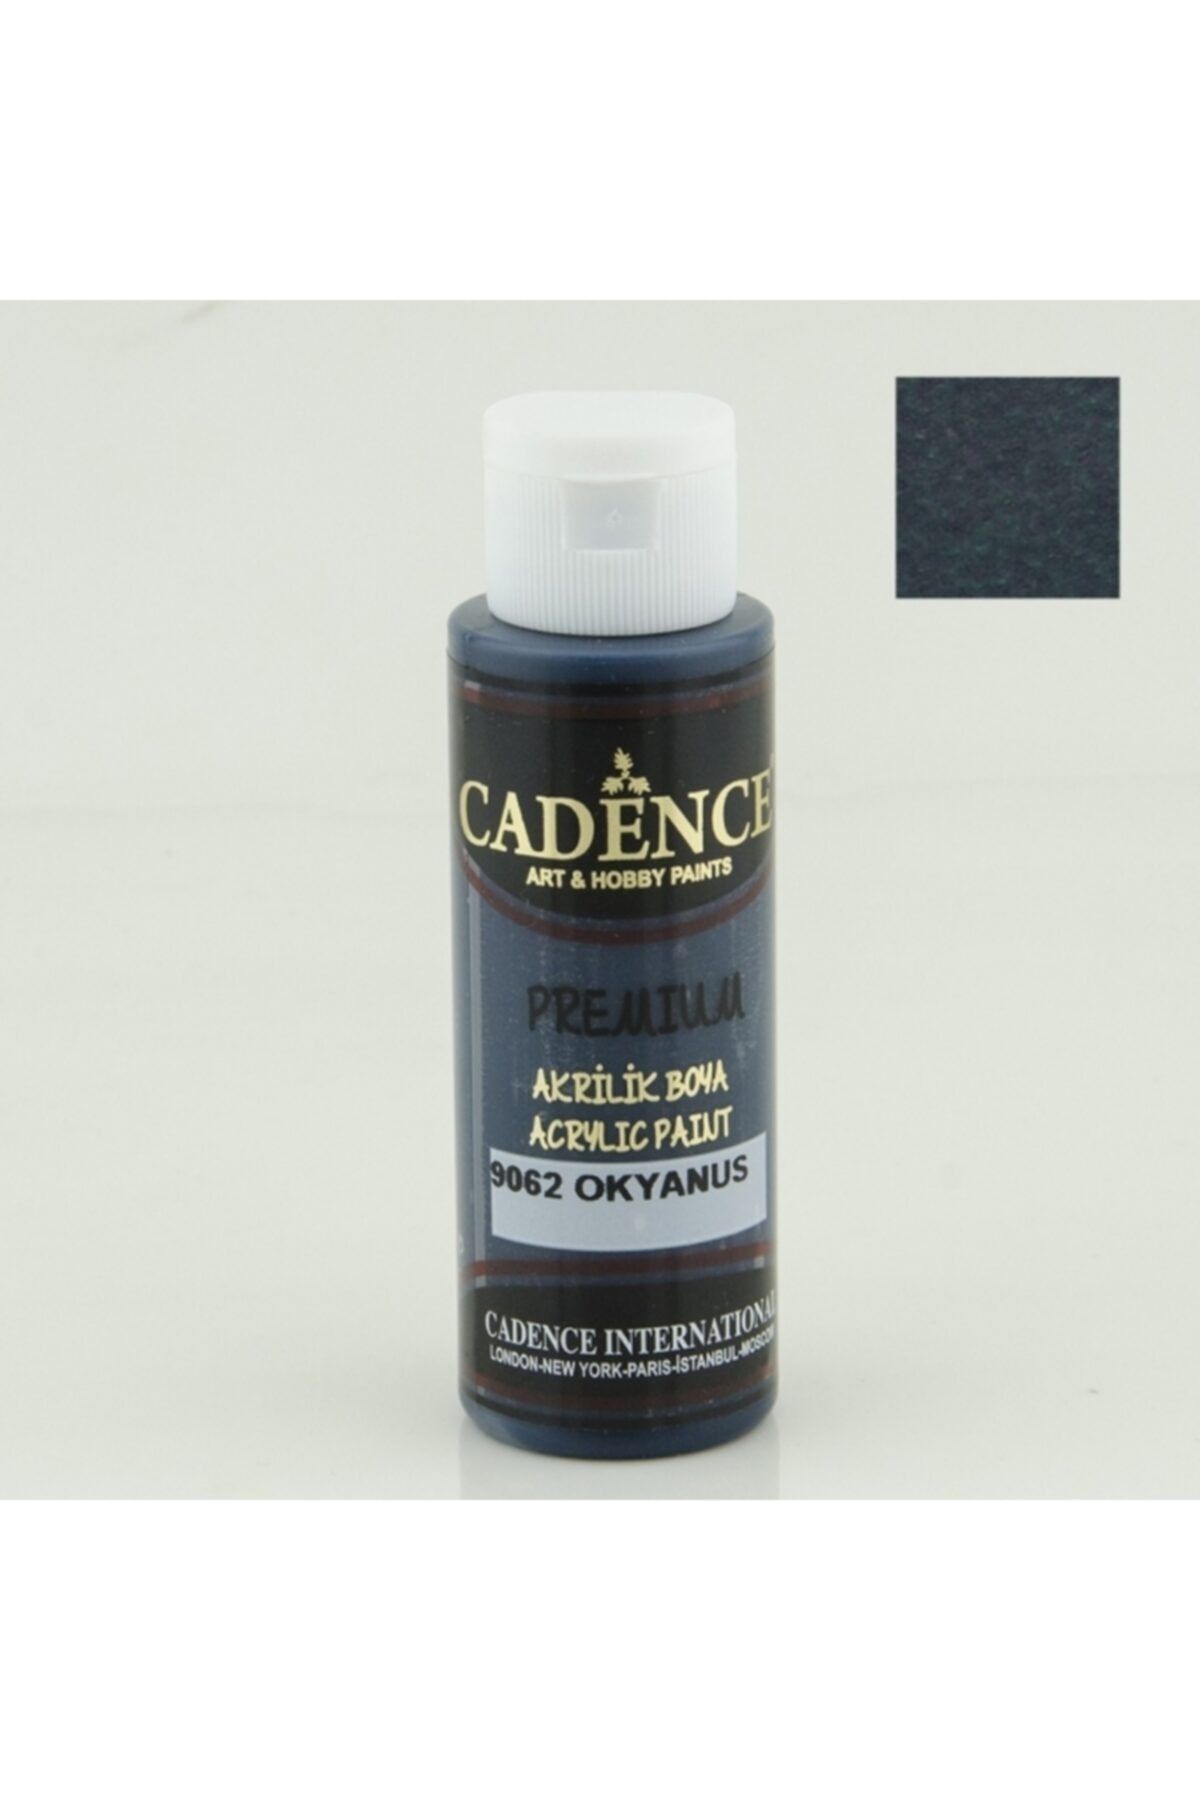 Cadence 9062 Okyanus - Premium Akrilik 70ml | Marmara Hobi